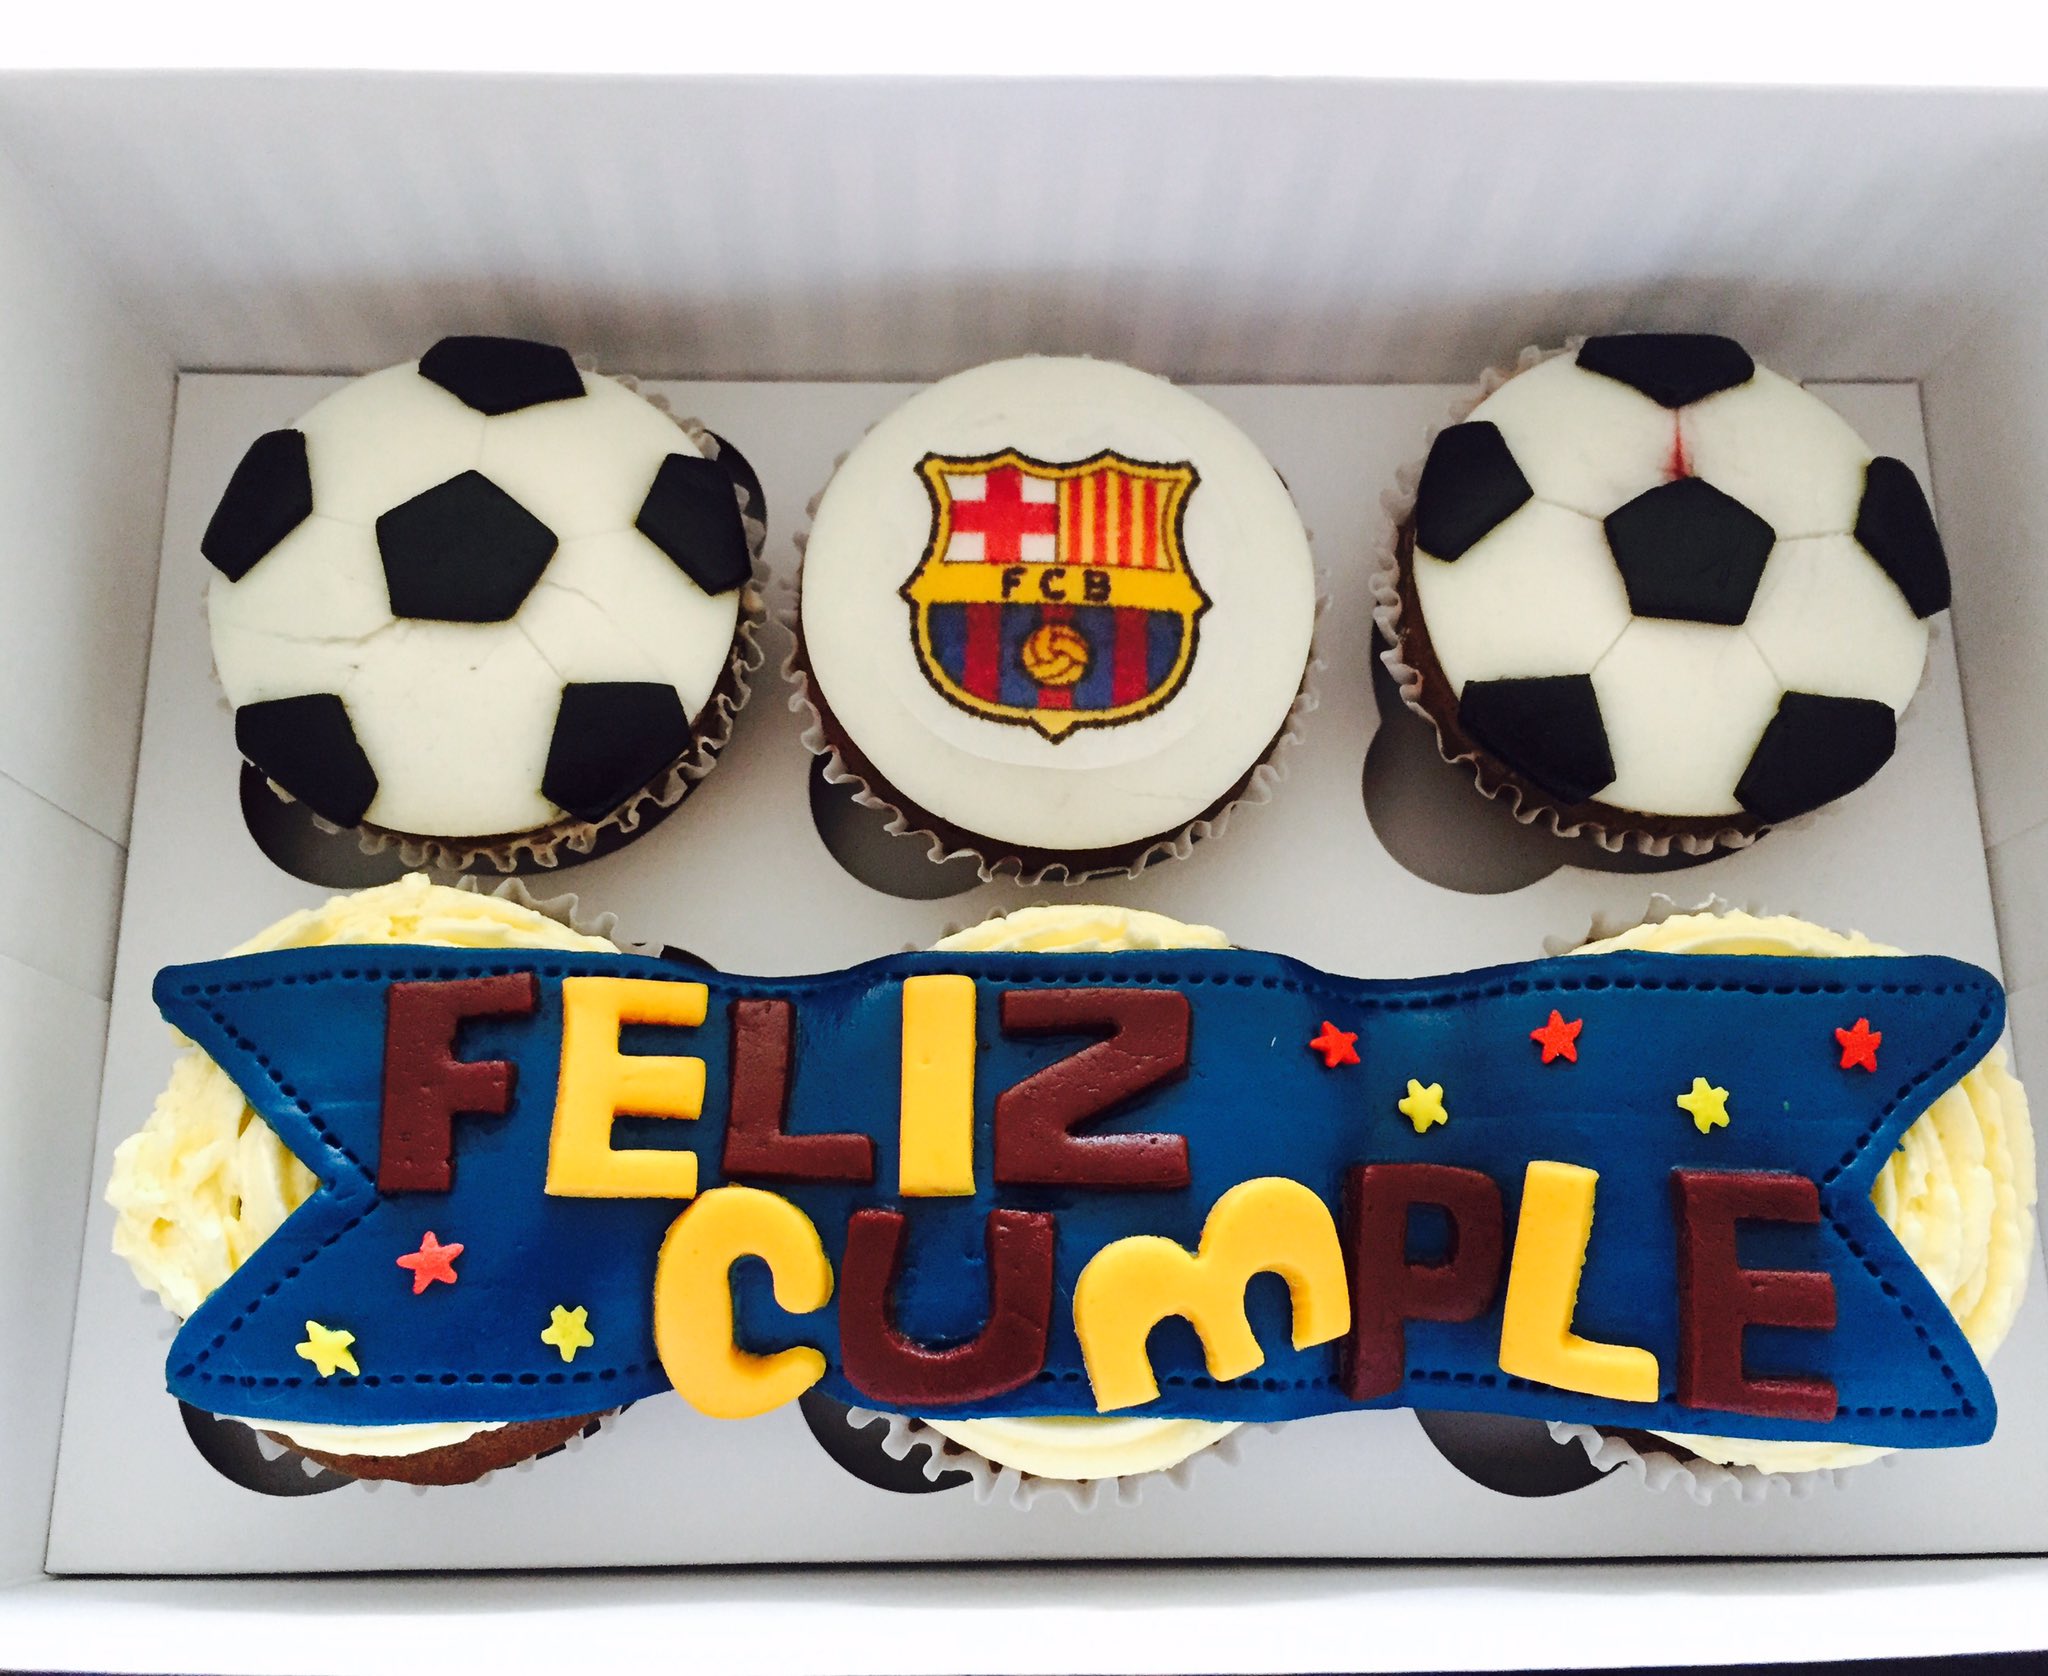 recepción suficiente coger un resfriado Martina Cupcakes Col on Twitter: "Definitivamente a nuestros clientes les  encanta el fútbol! ☺️⚽️❤️#MartinaCupcakesCol #BarcelonaFC #Cupcakes #Futbol  https://t.co/iIGX8XPMwQ" / Twitter